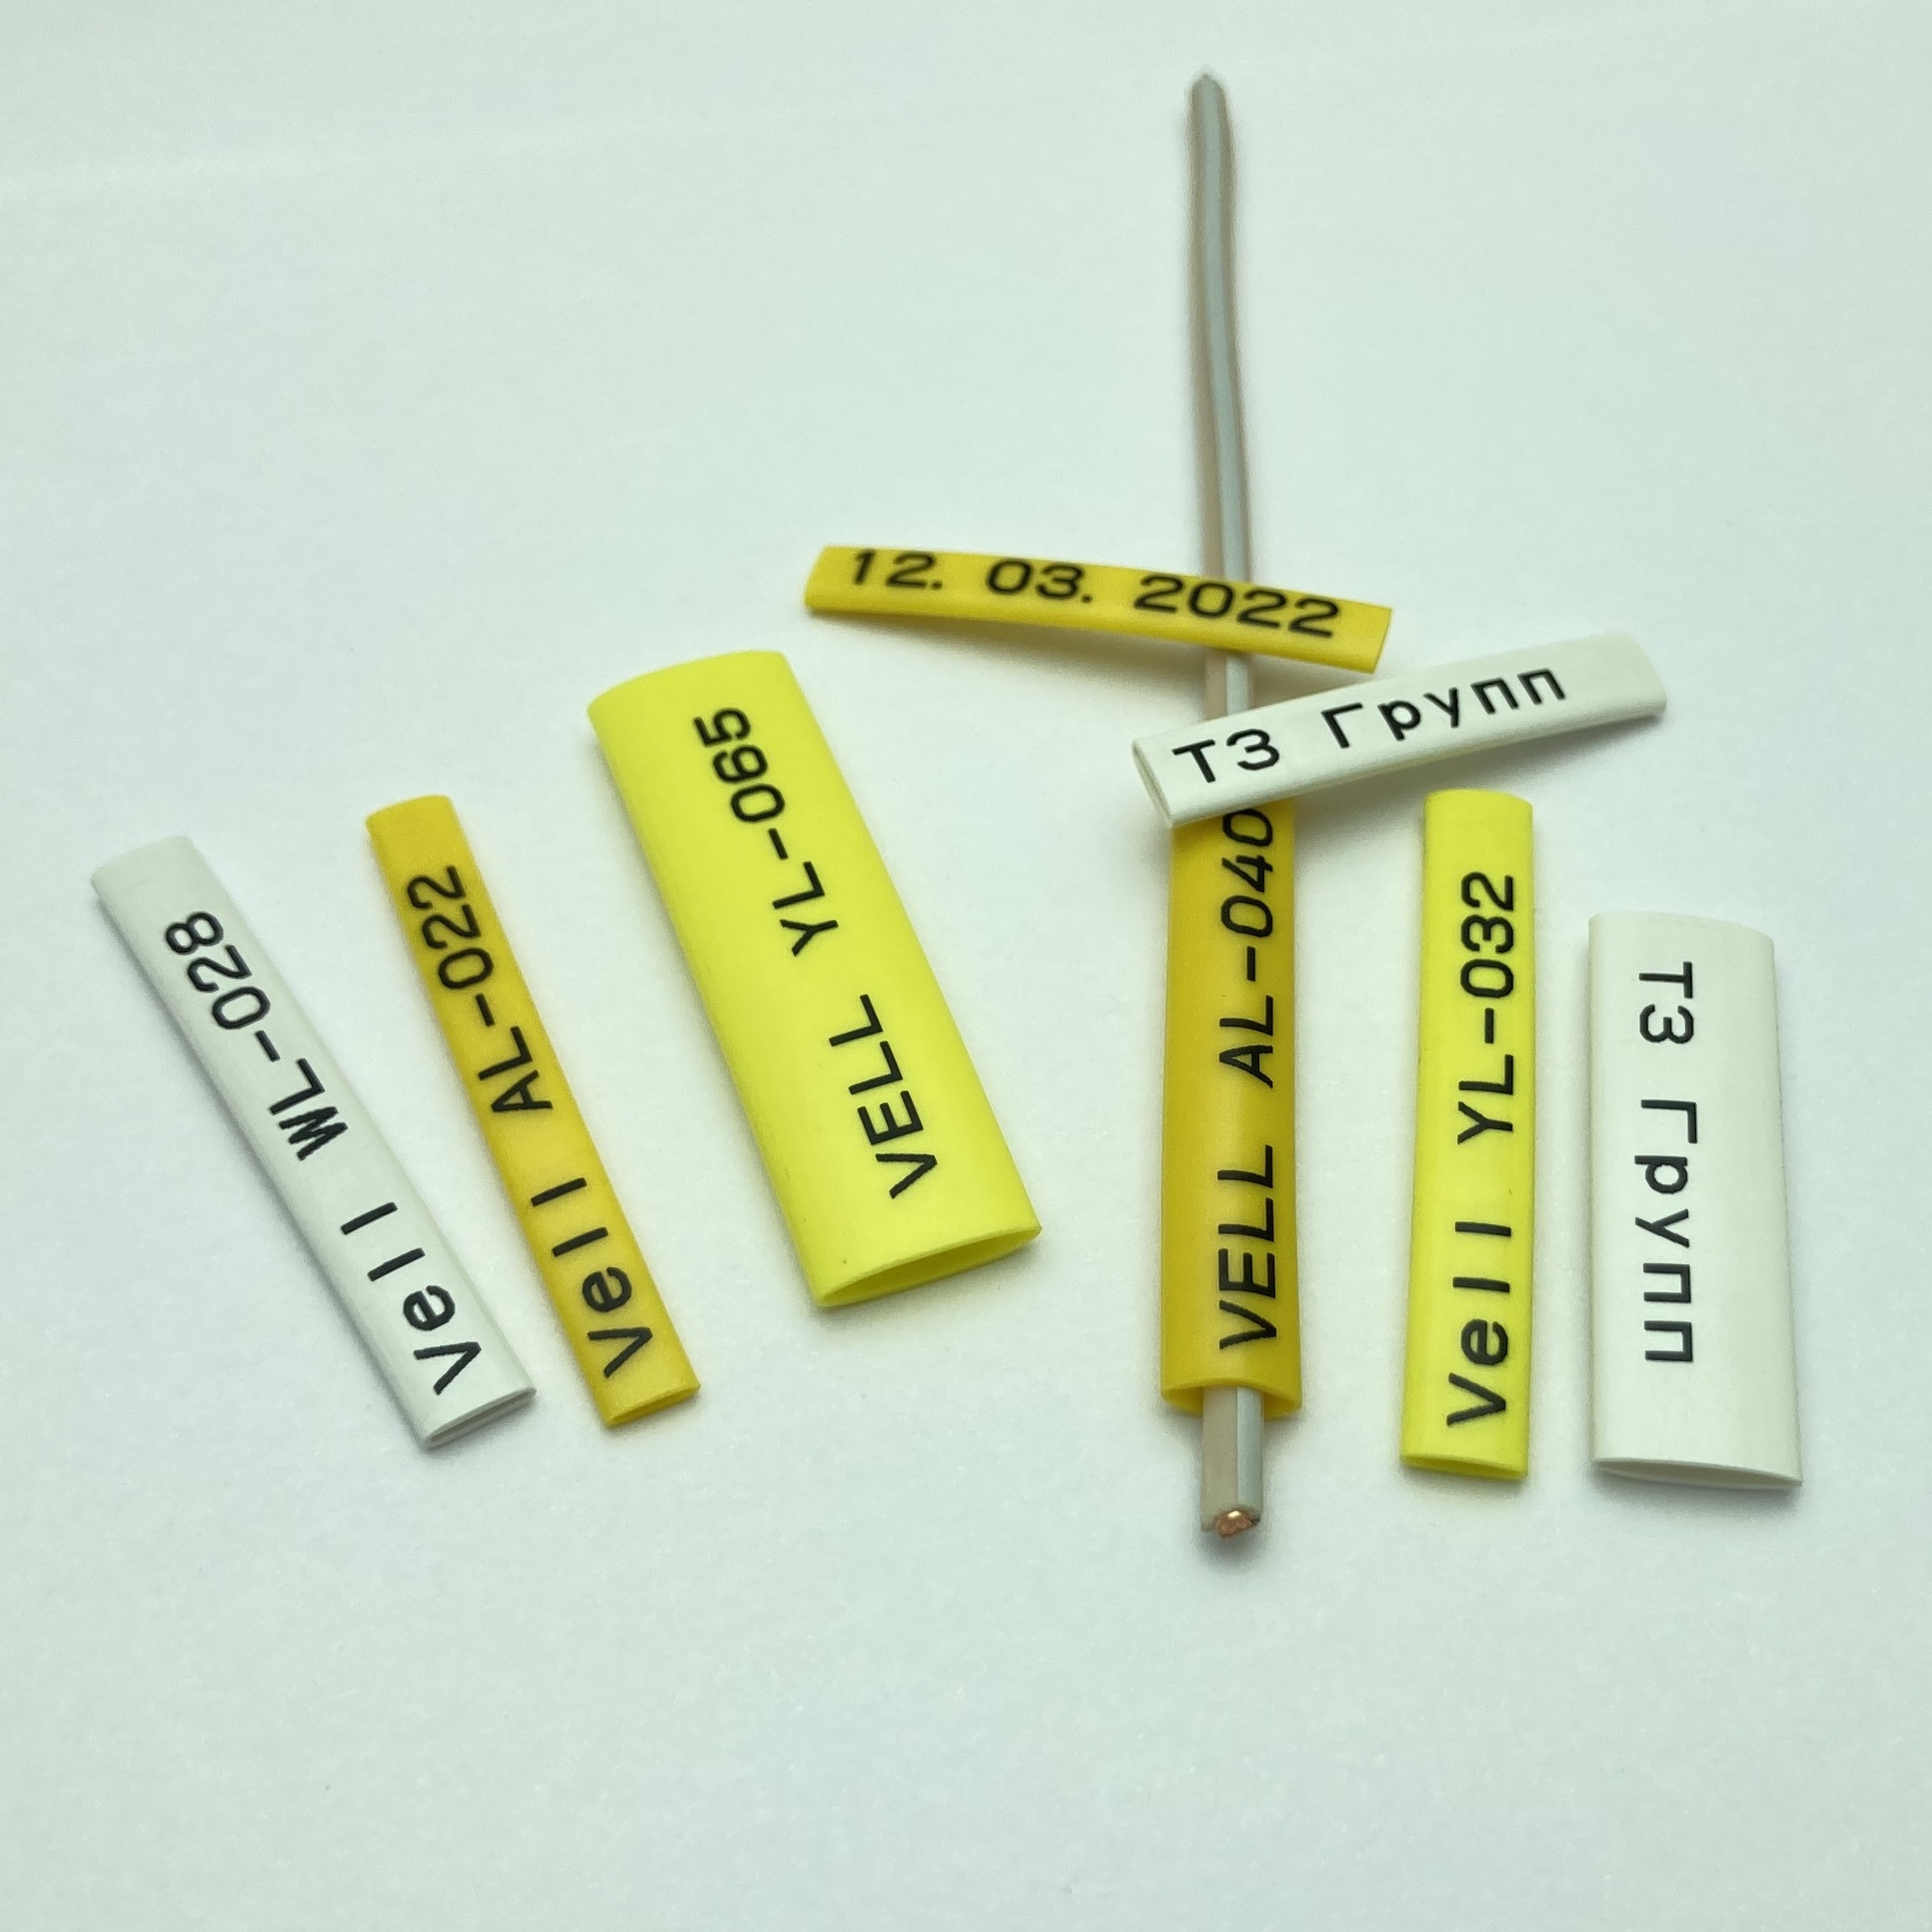 Фото Профиль ПВХ овальный Vell AL-028 для маркировки проводов, Ø 2,8 мм, 200 метров, янтарно-желтый, аналог Partex PO-04 (самозатухающий) {590394} (3)